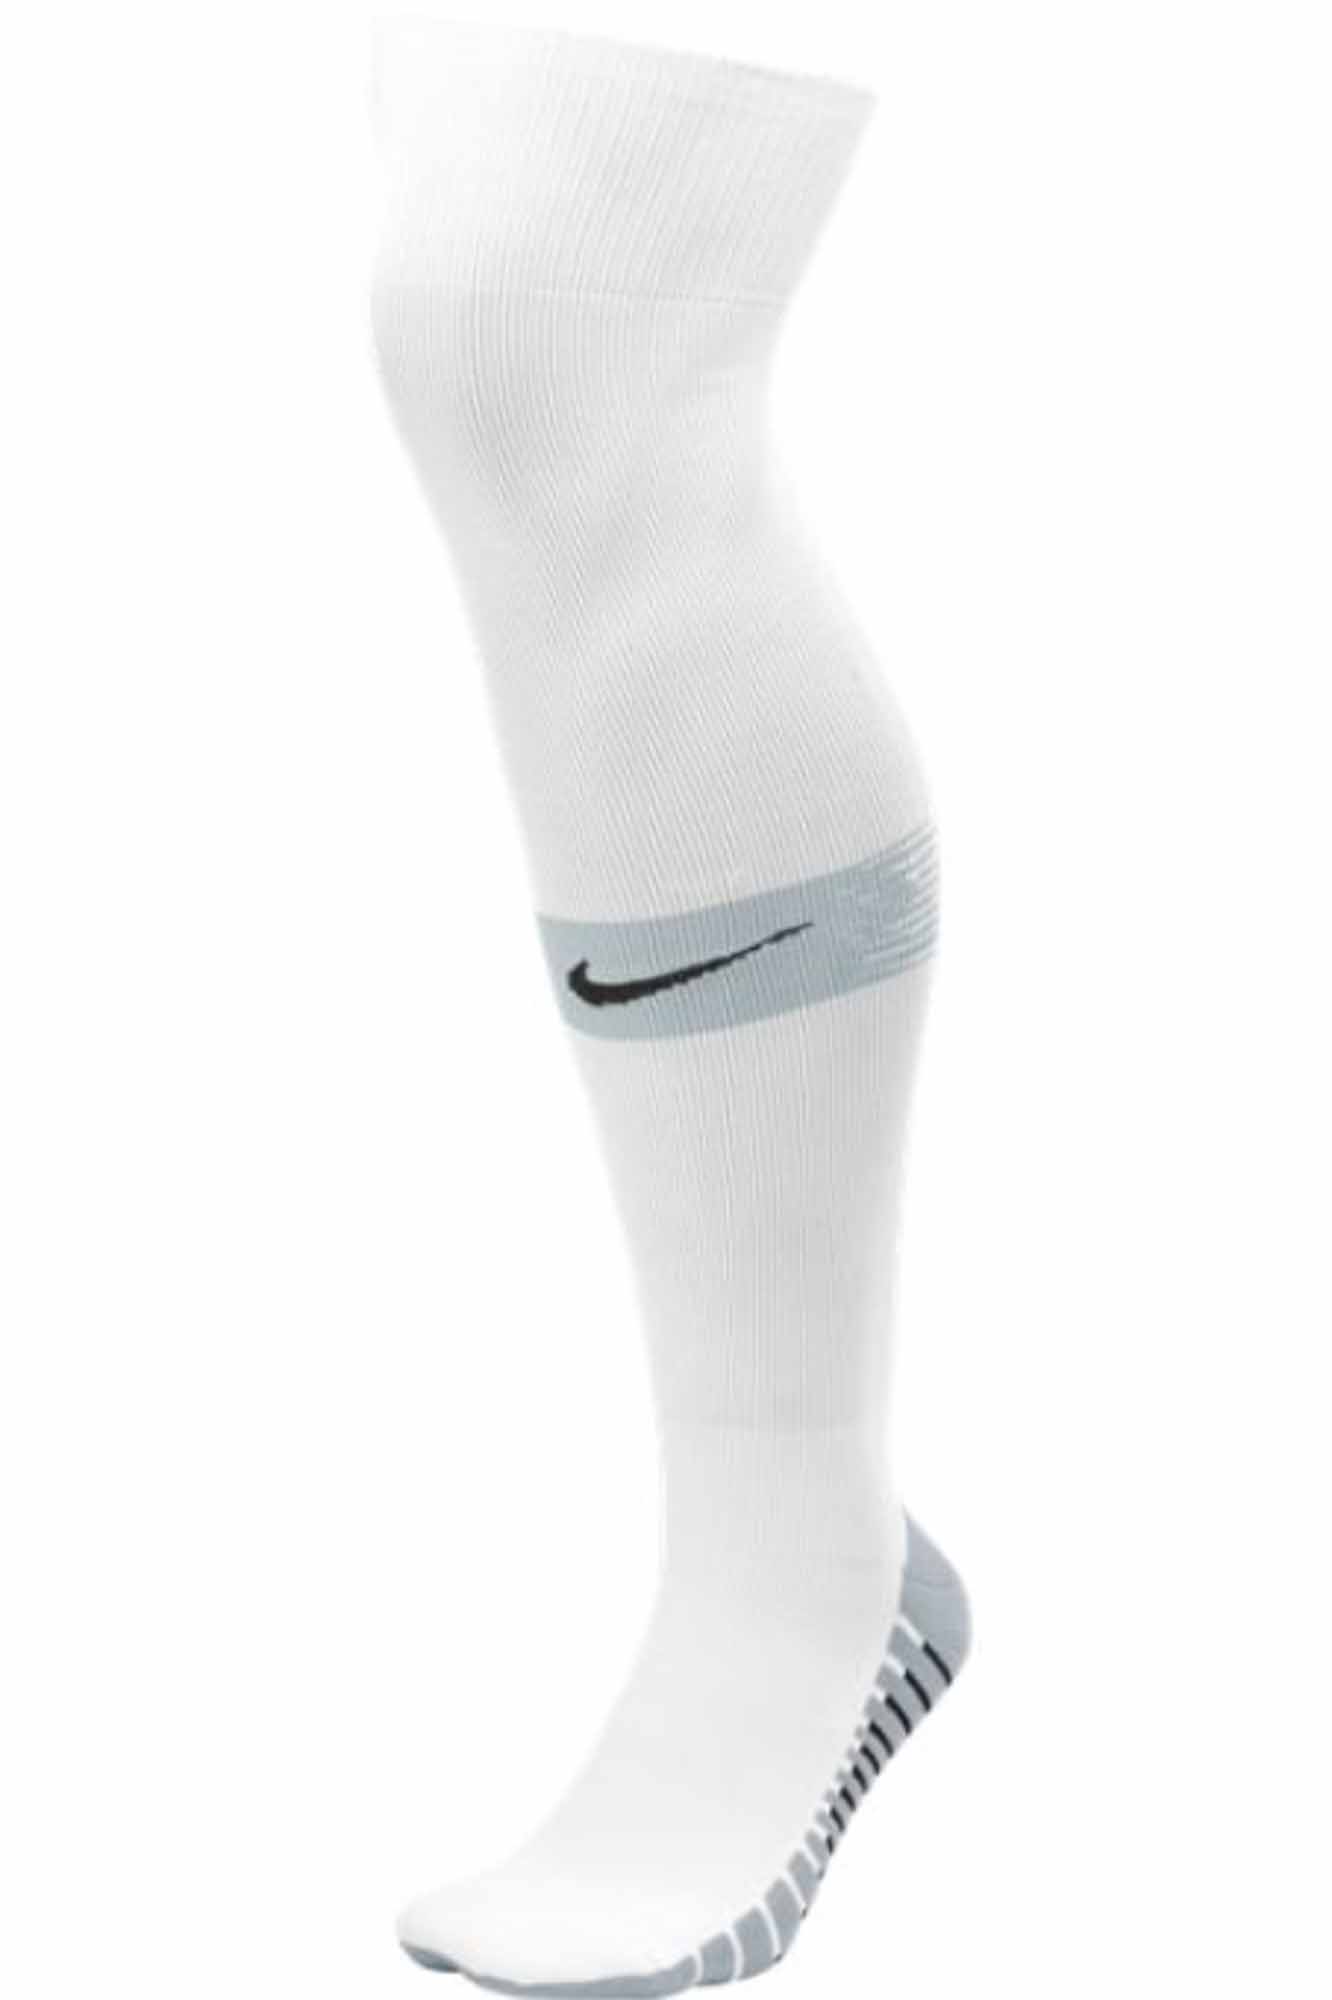 Nike Team Matchfit Soccer Socks - White/Jetstream - SoccerPro